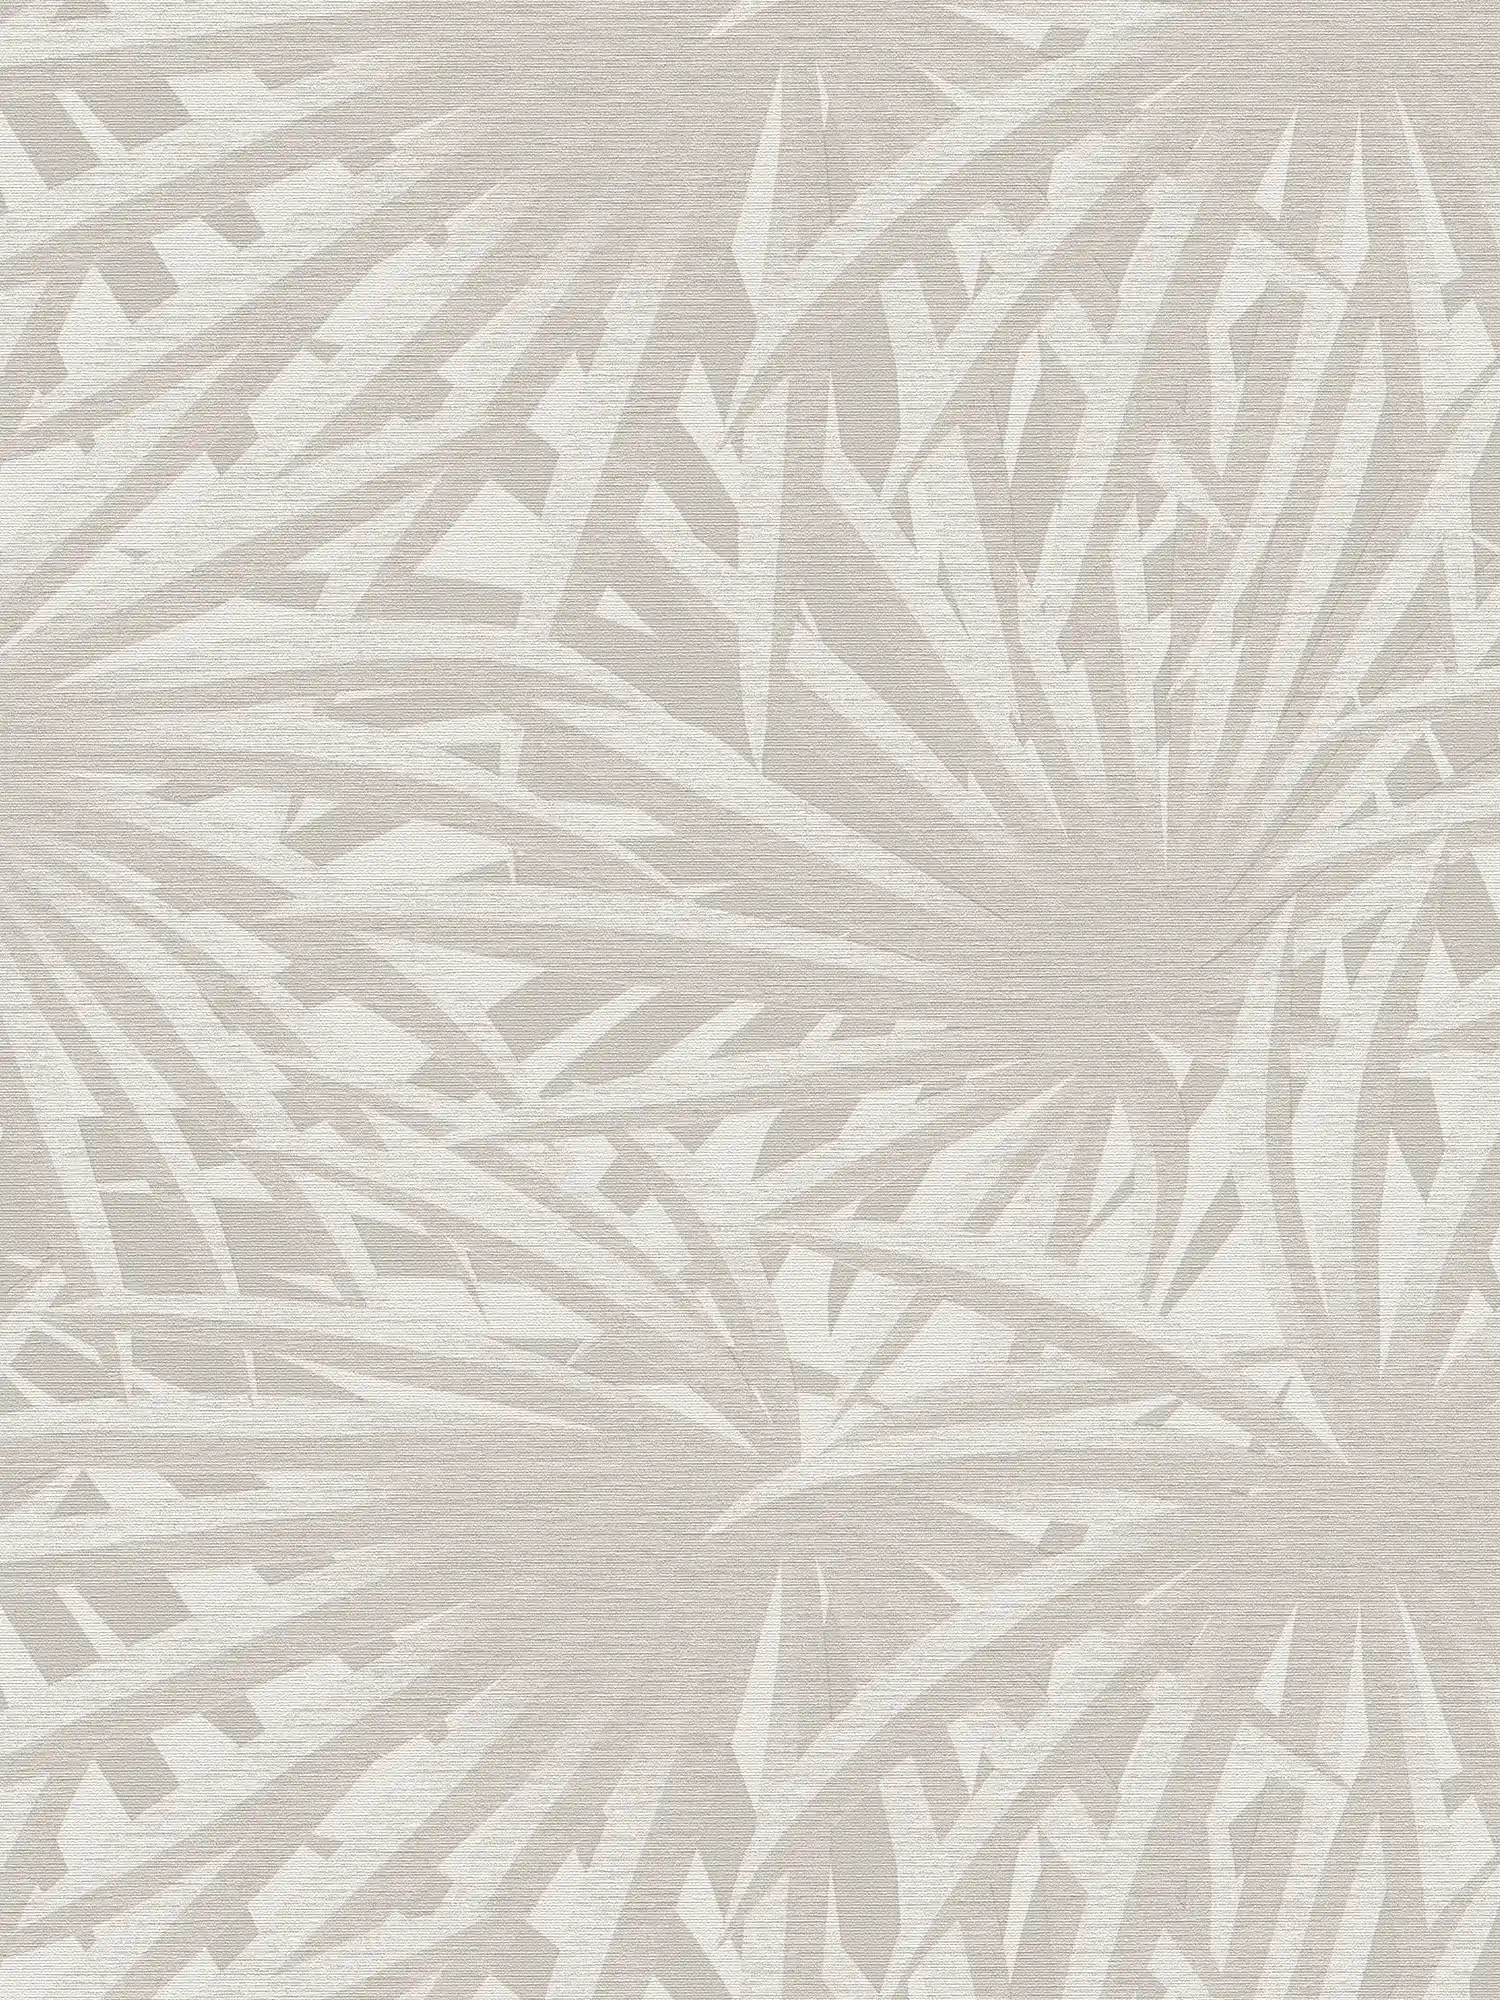 Carta da parati in tessuto non tessuto con disegno di foglie e lucentezza metallica - grigio, metallizzato, bianco
